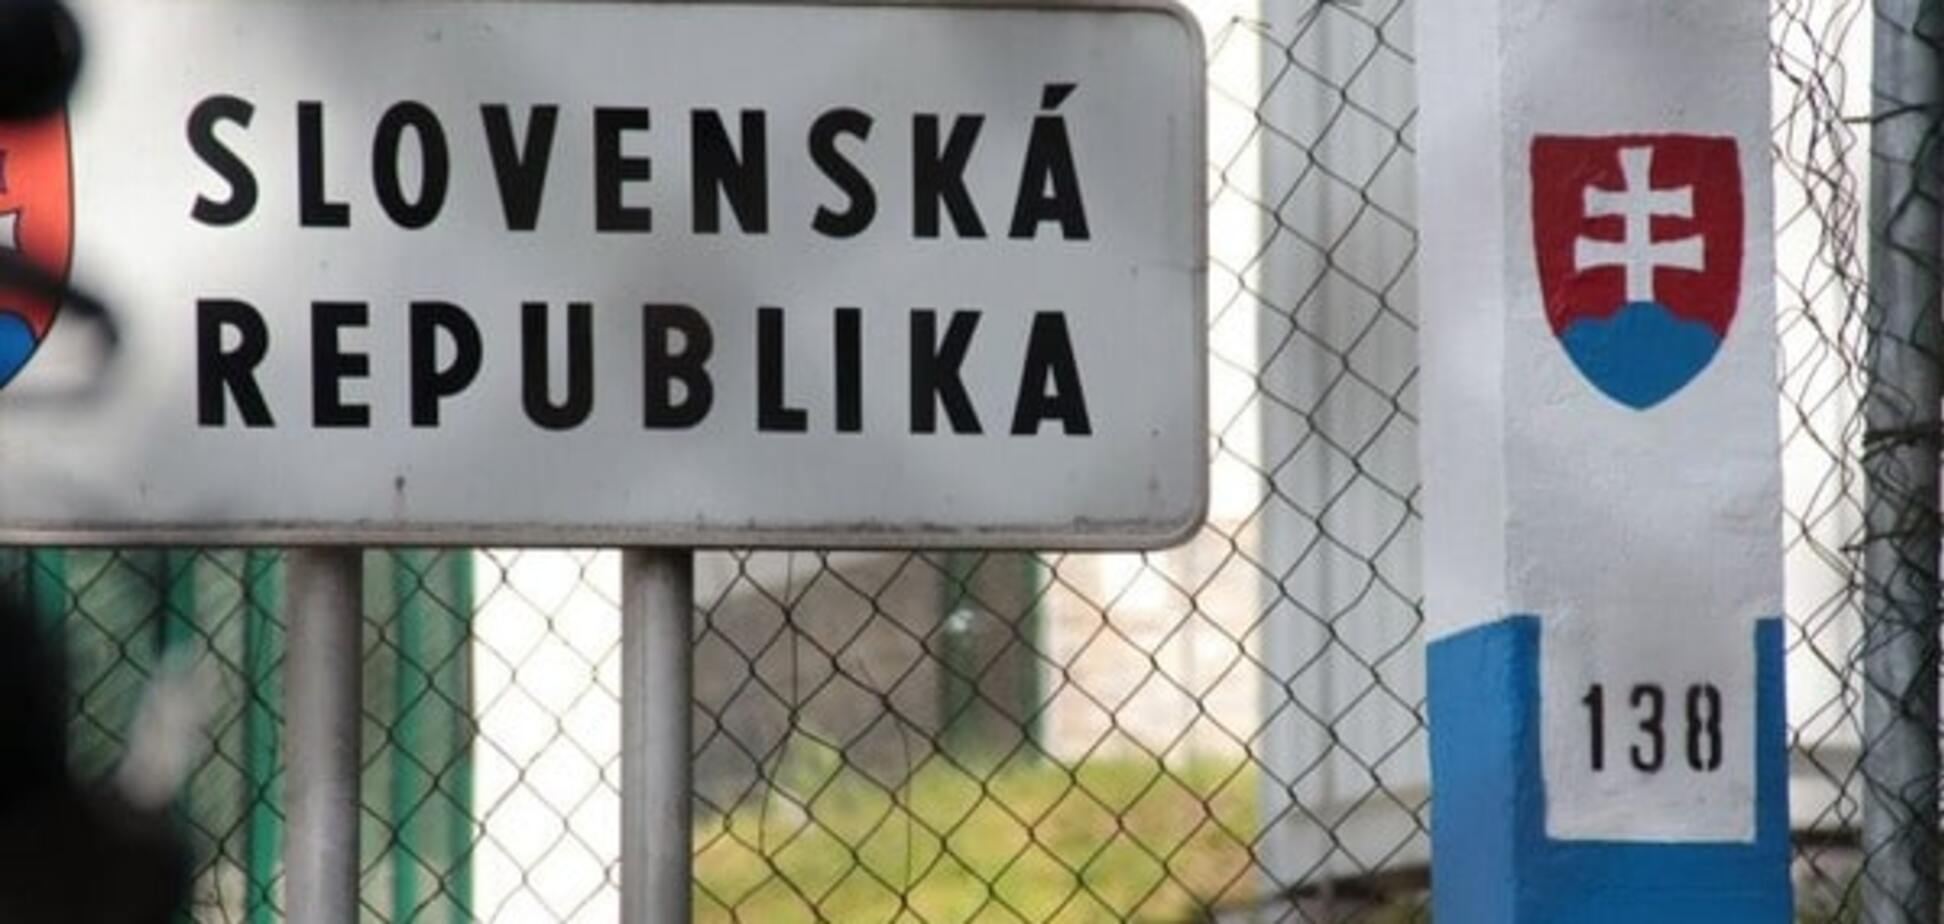 Граница на замке: автомобилисты перекрыли единственную дорогу на Словакию 